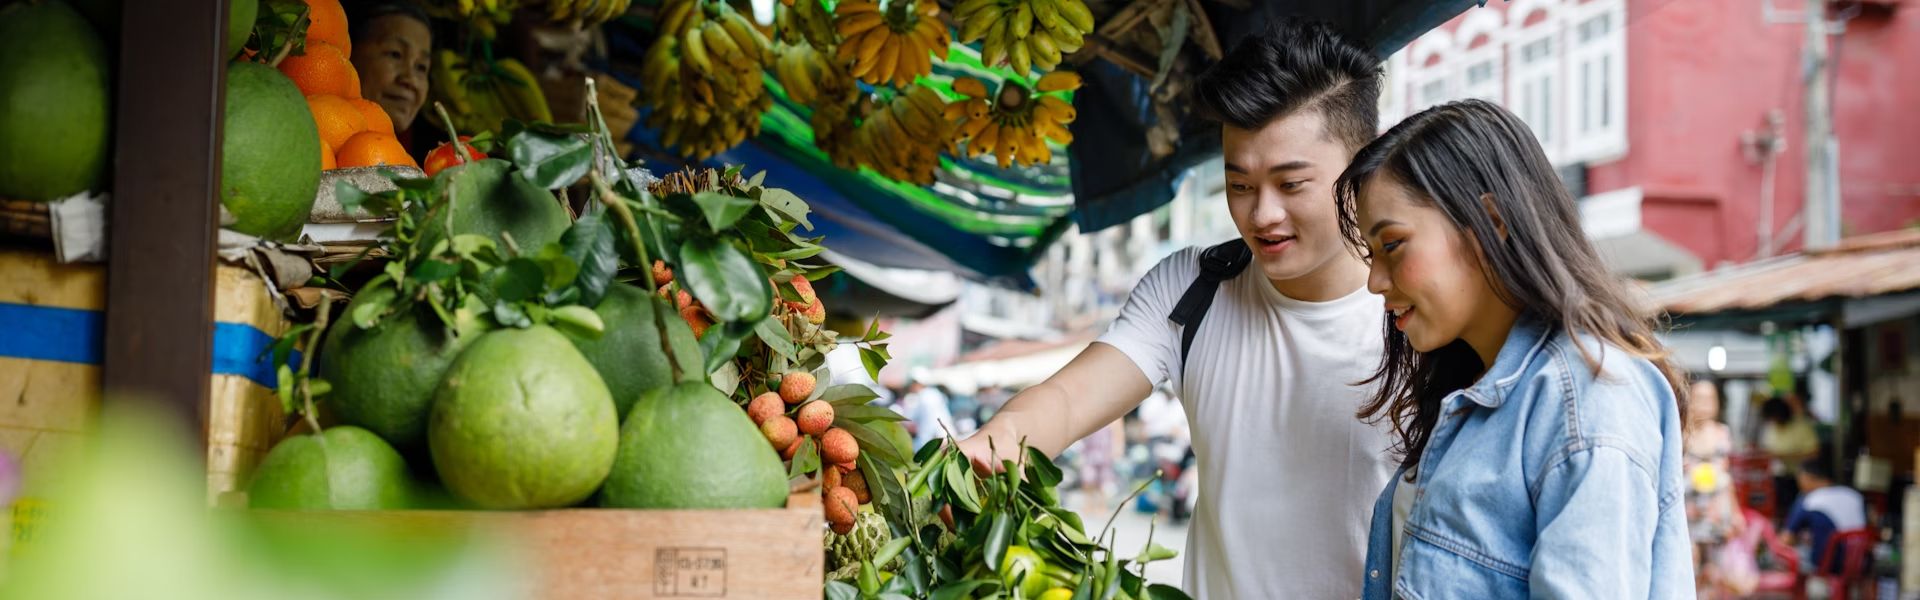 Costo de vida en Vietnam por mes: Gastos de vida diarios